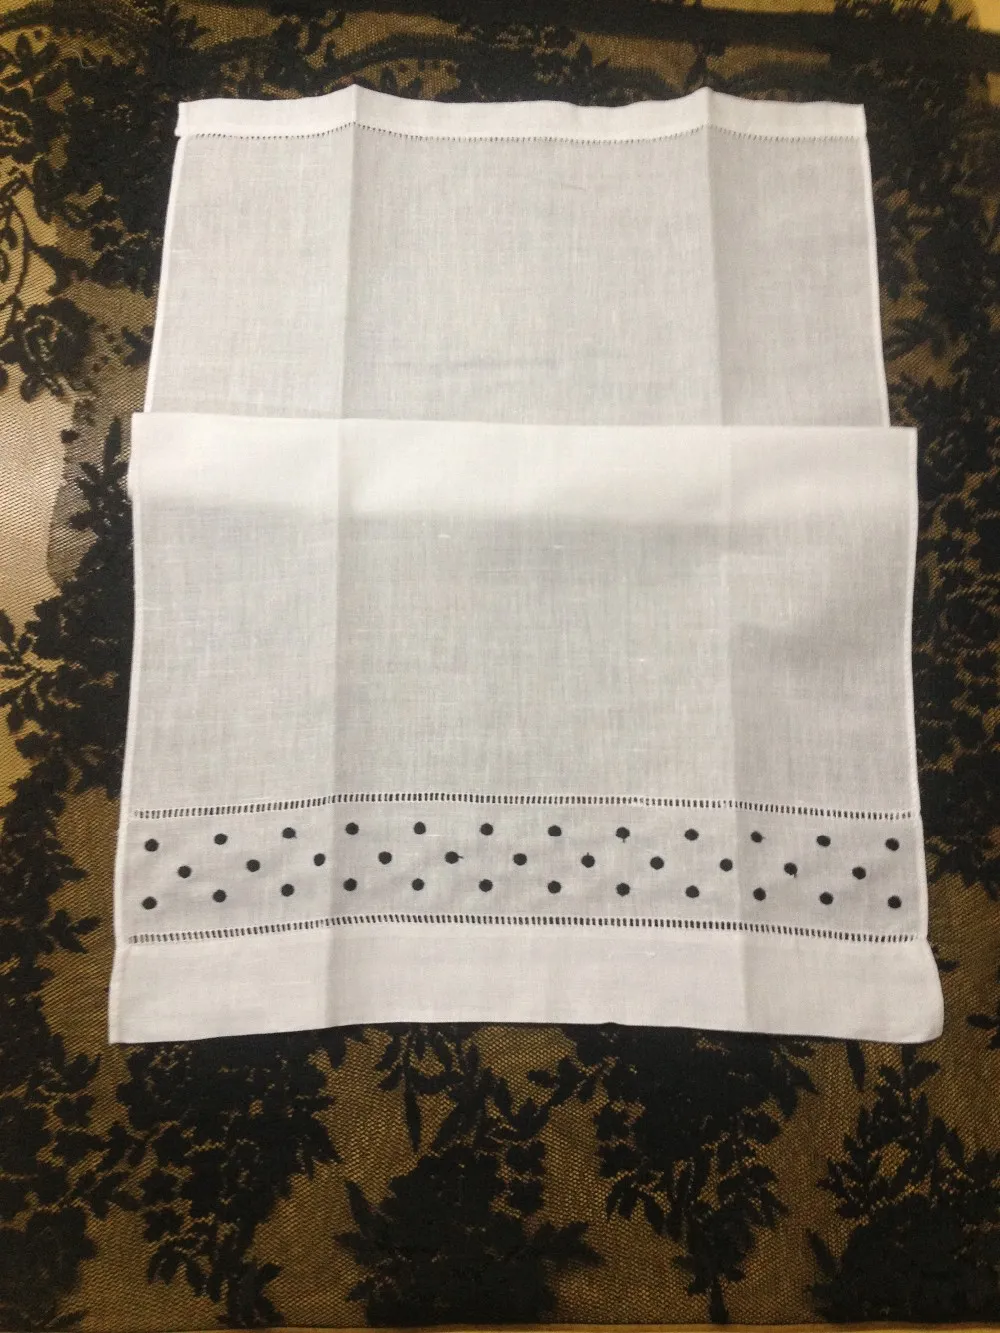 Hemtextiles handduk lot 14x22quotwhite linne handduk med broderade svarta prickar gästhandduk för tillfällen9596238